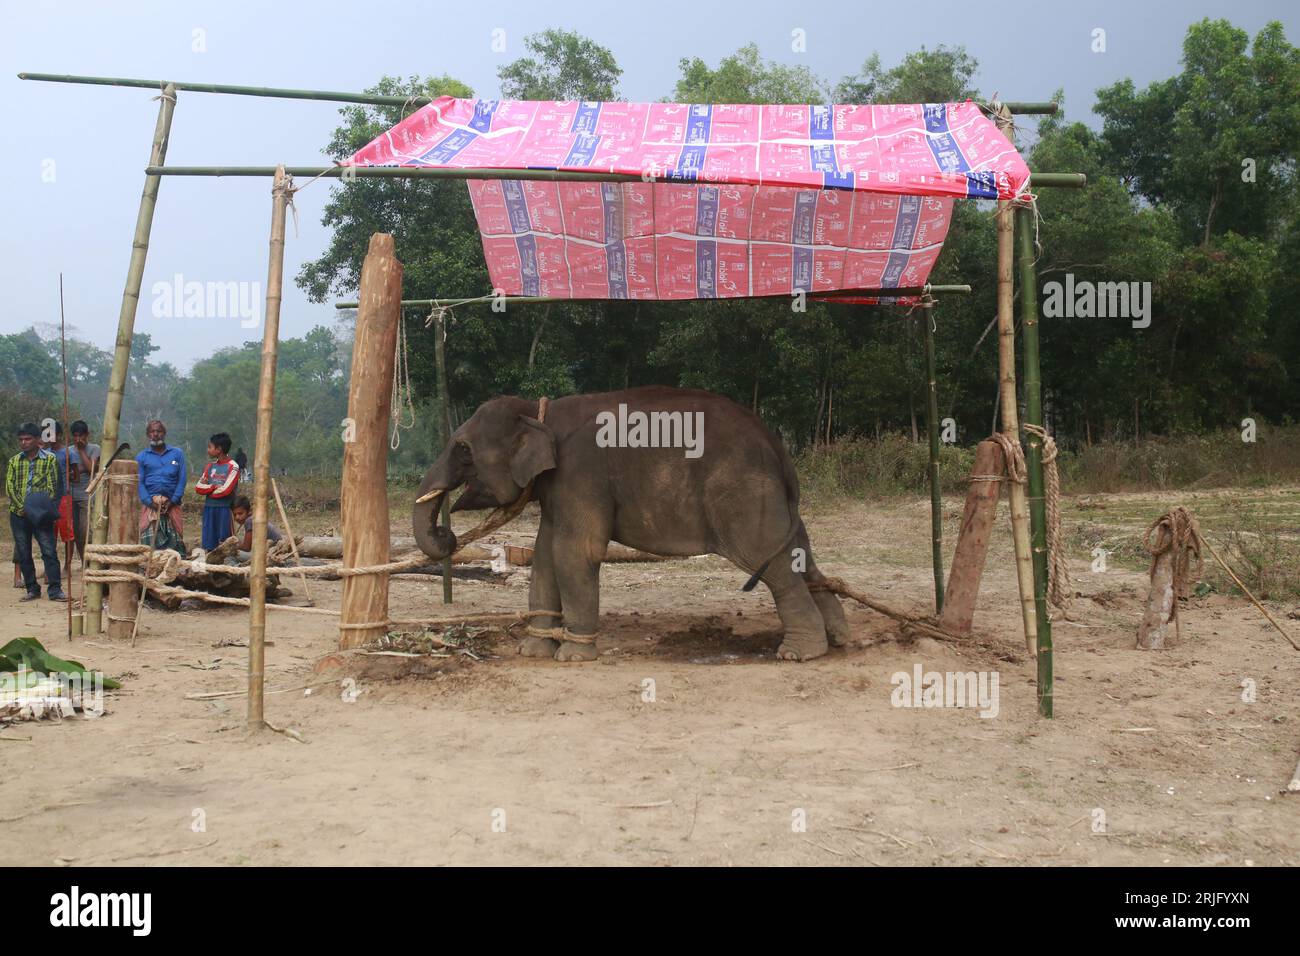 Un éléphant attaché avec une corde pendant une période d'entraînement à Moulvibazar, Bangladesh, le 26 janvier 2022. Banque D'Images